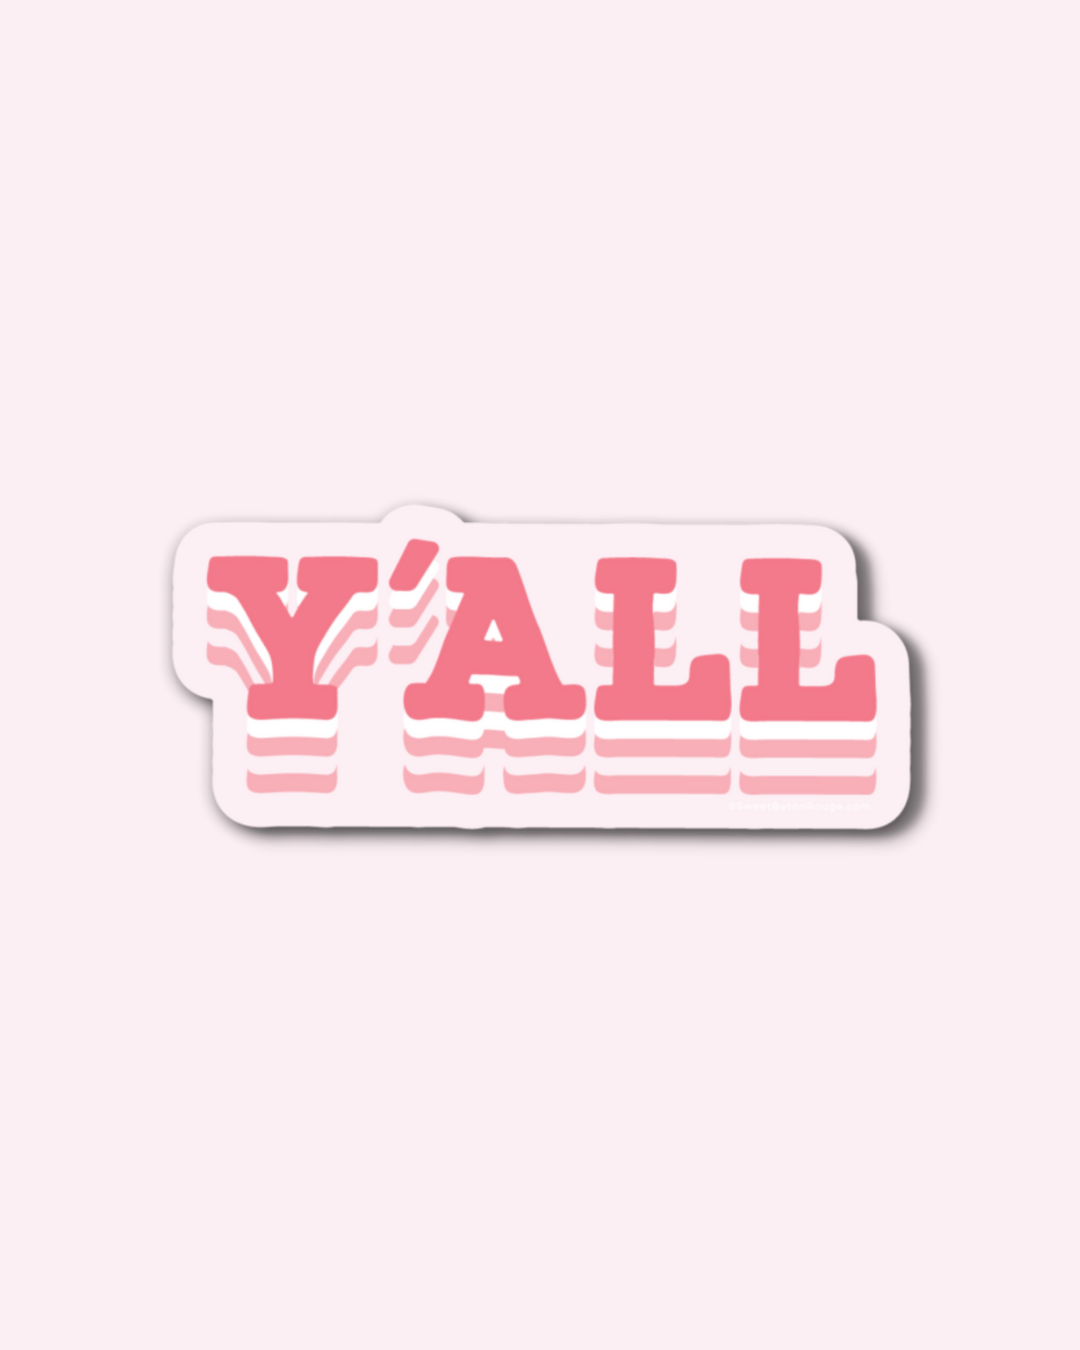 Y'all | Sticker